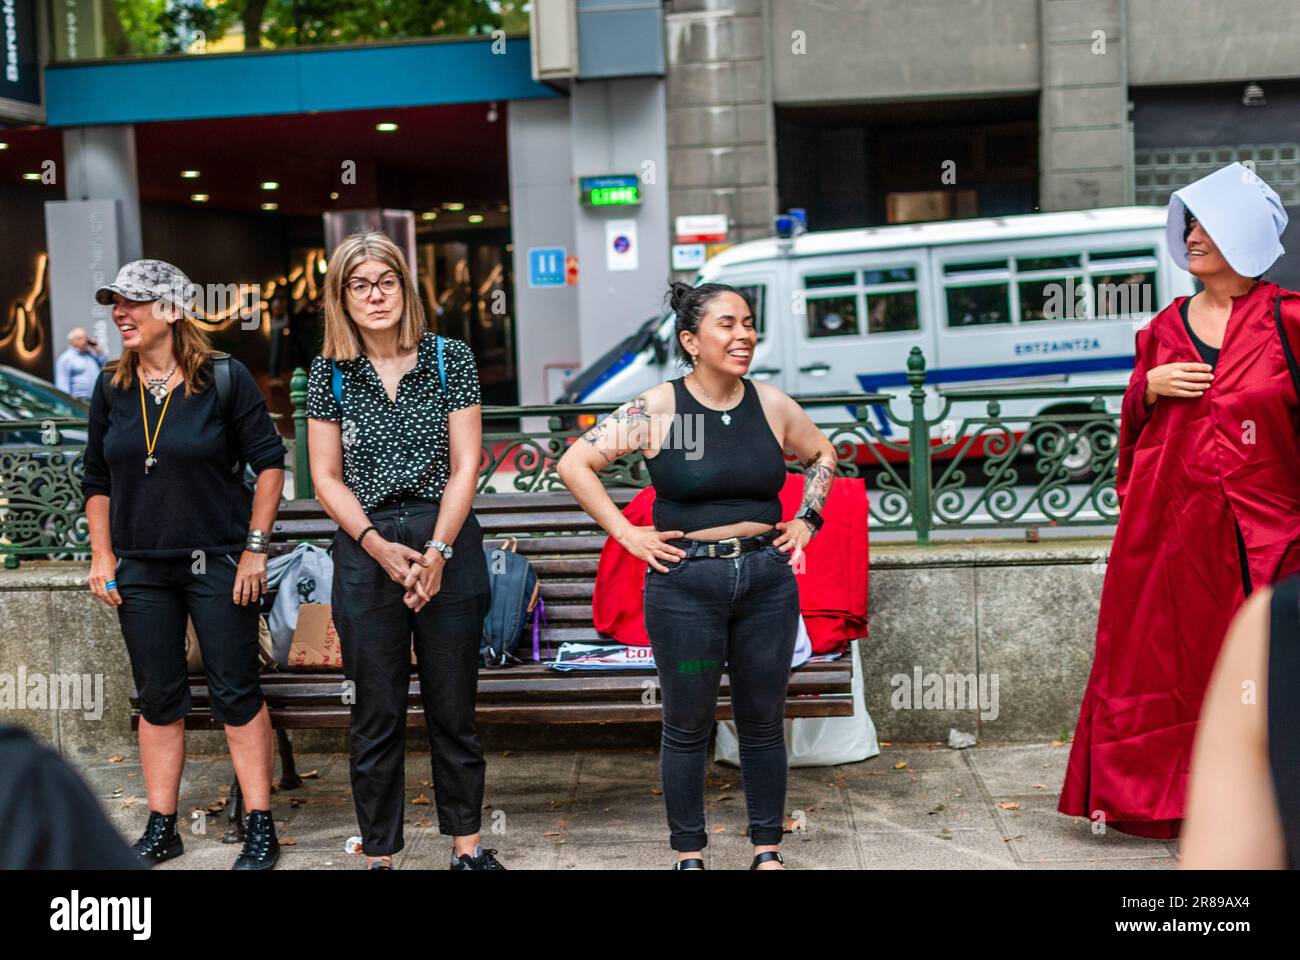 Attivisti radicali femministi vestiti con un costume della serie 'la racconto della serva' partecipano a una manifestazione contro la surrogazione. Foto Stock